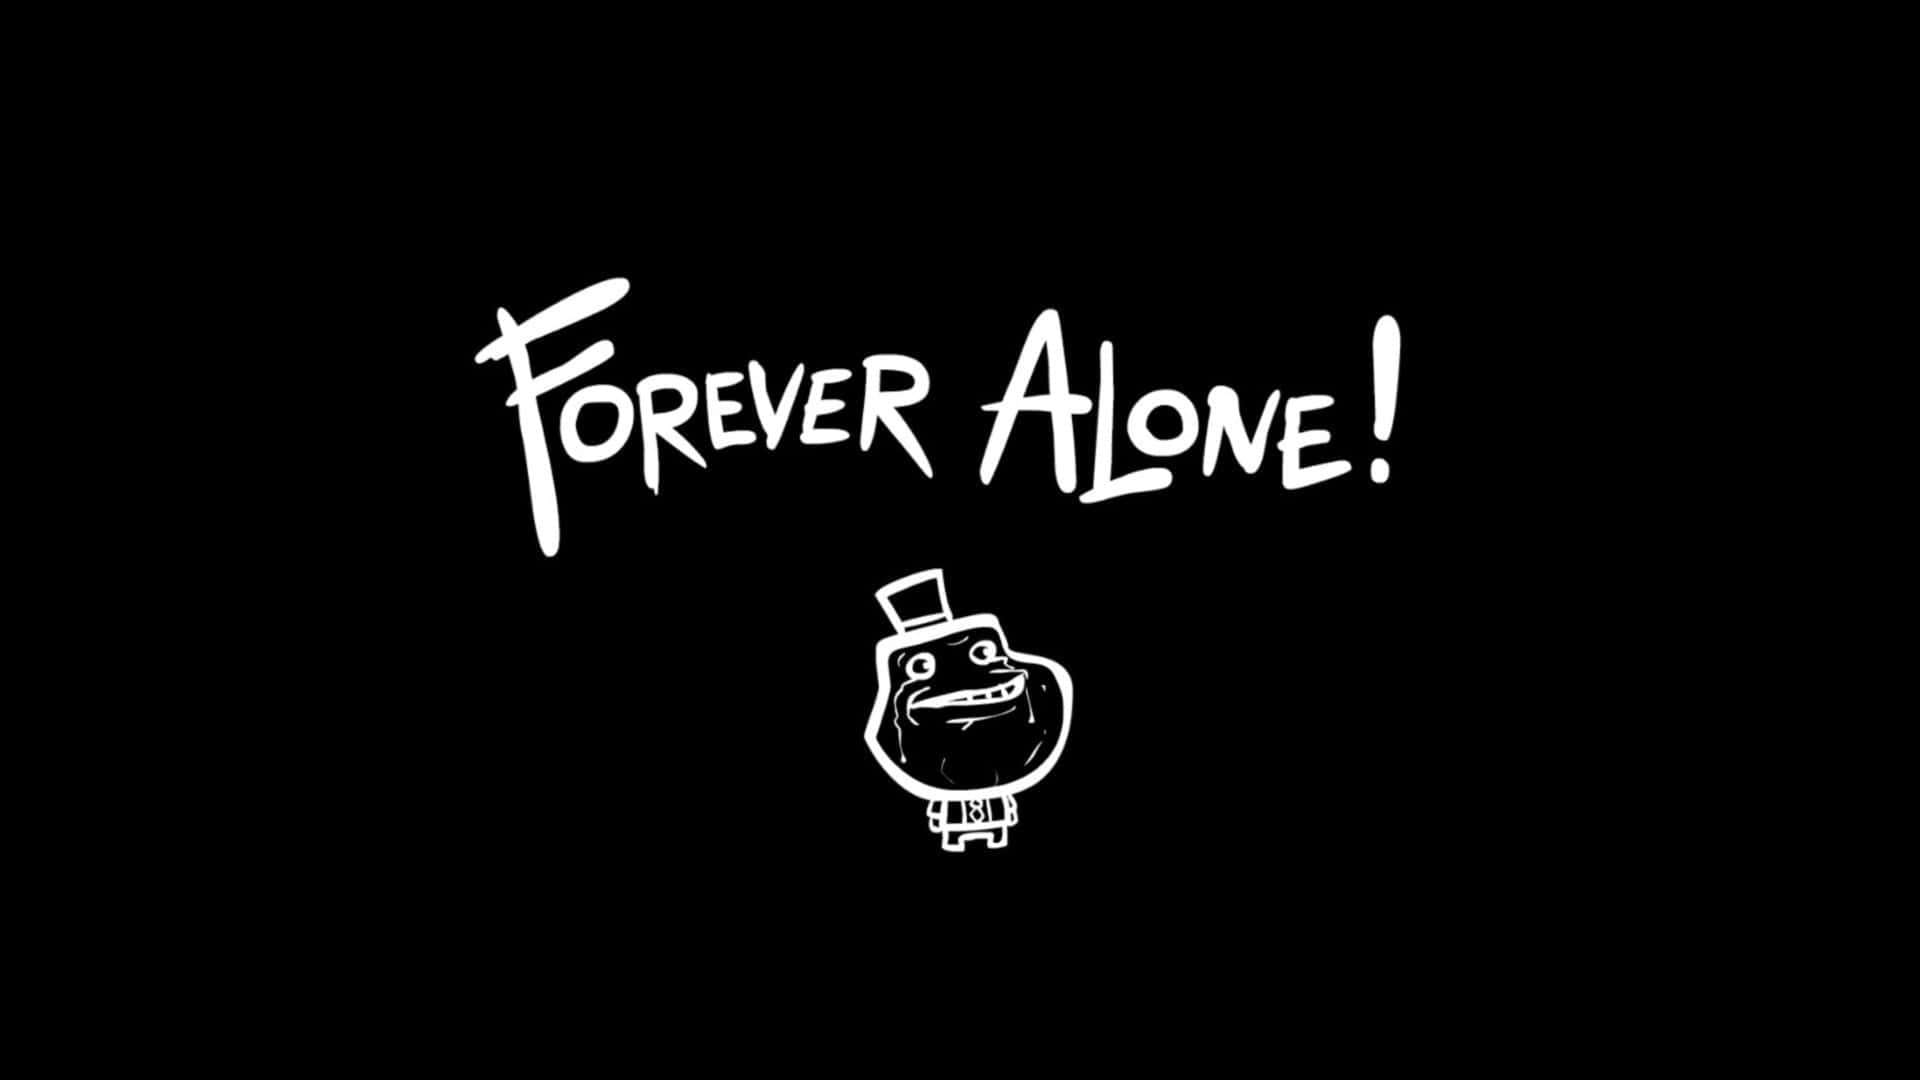 forever alone meme